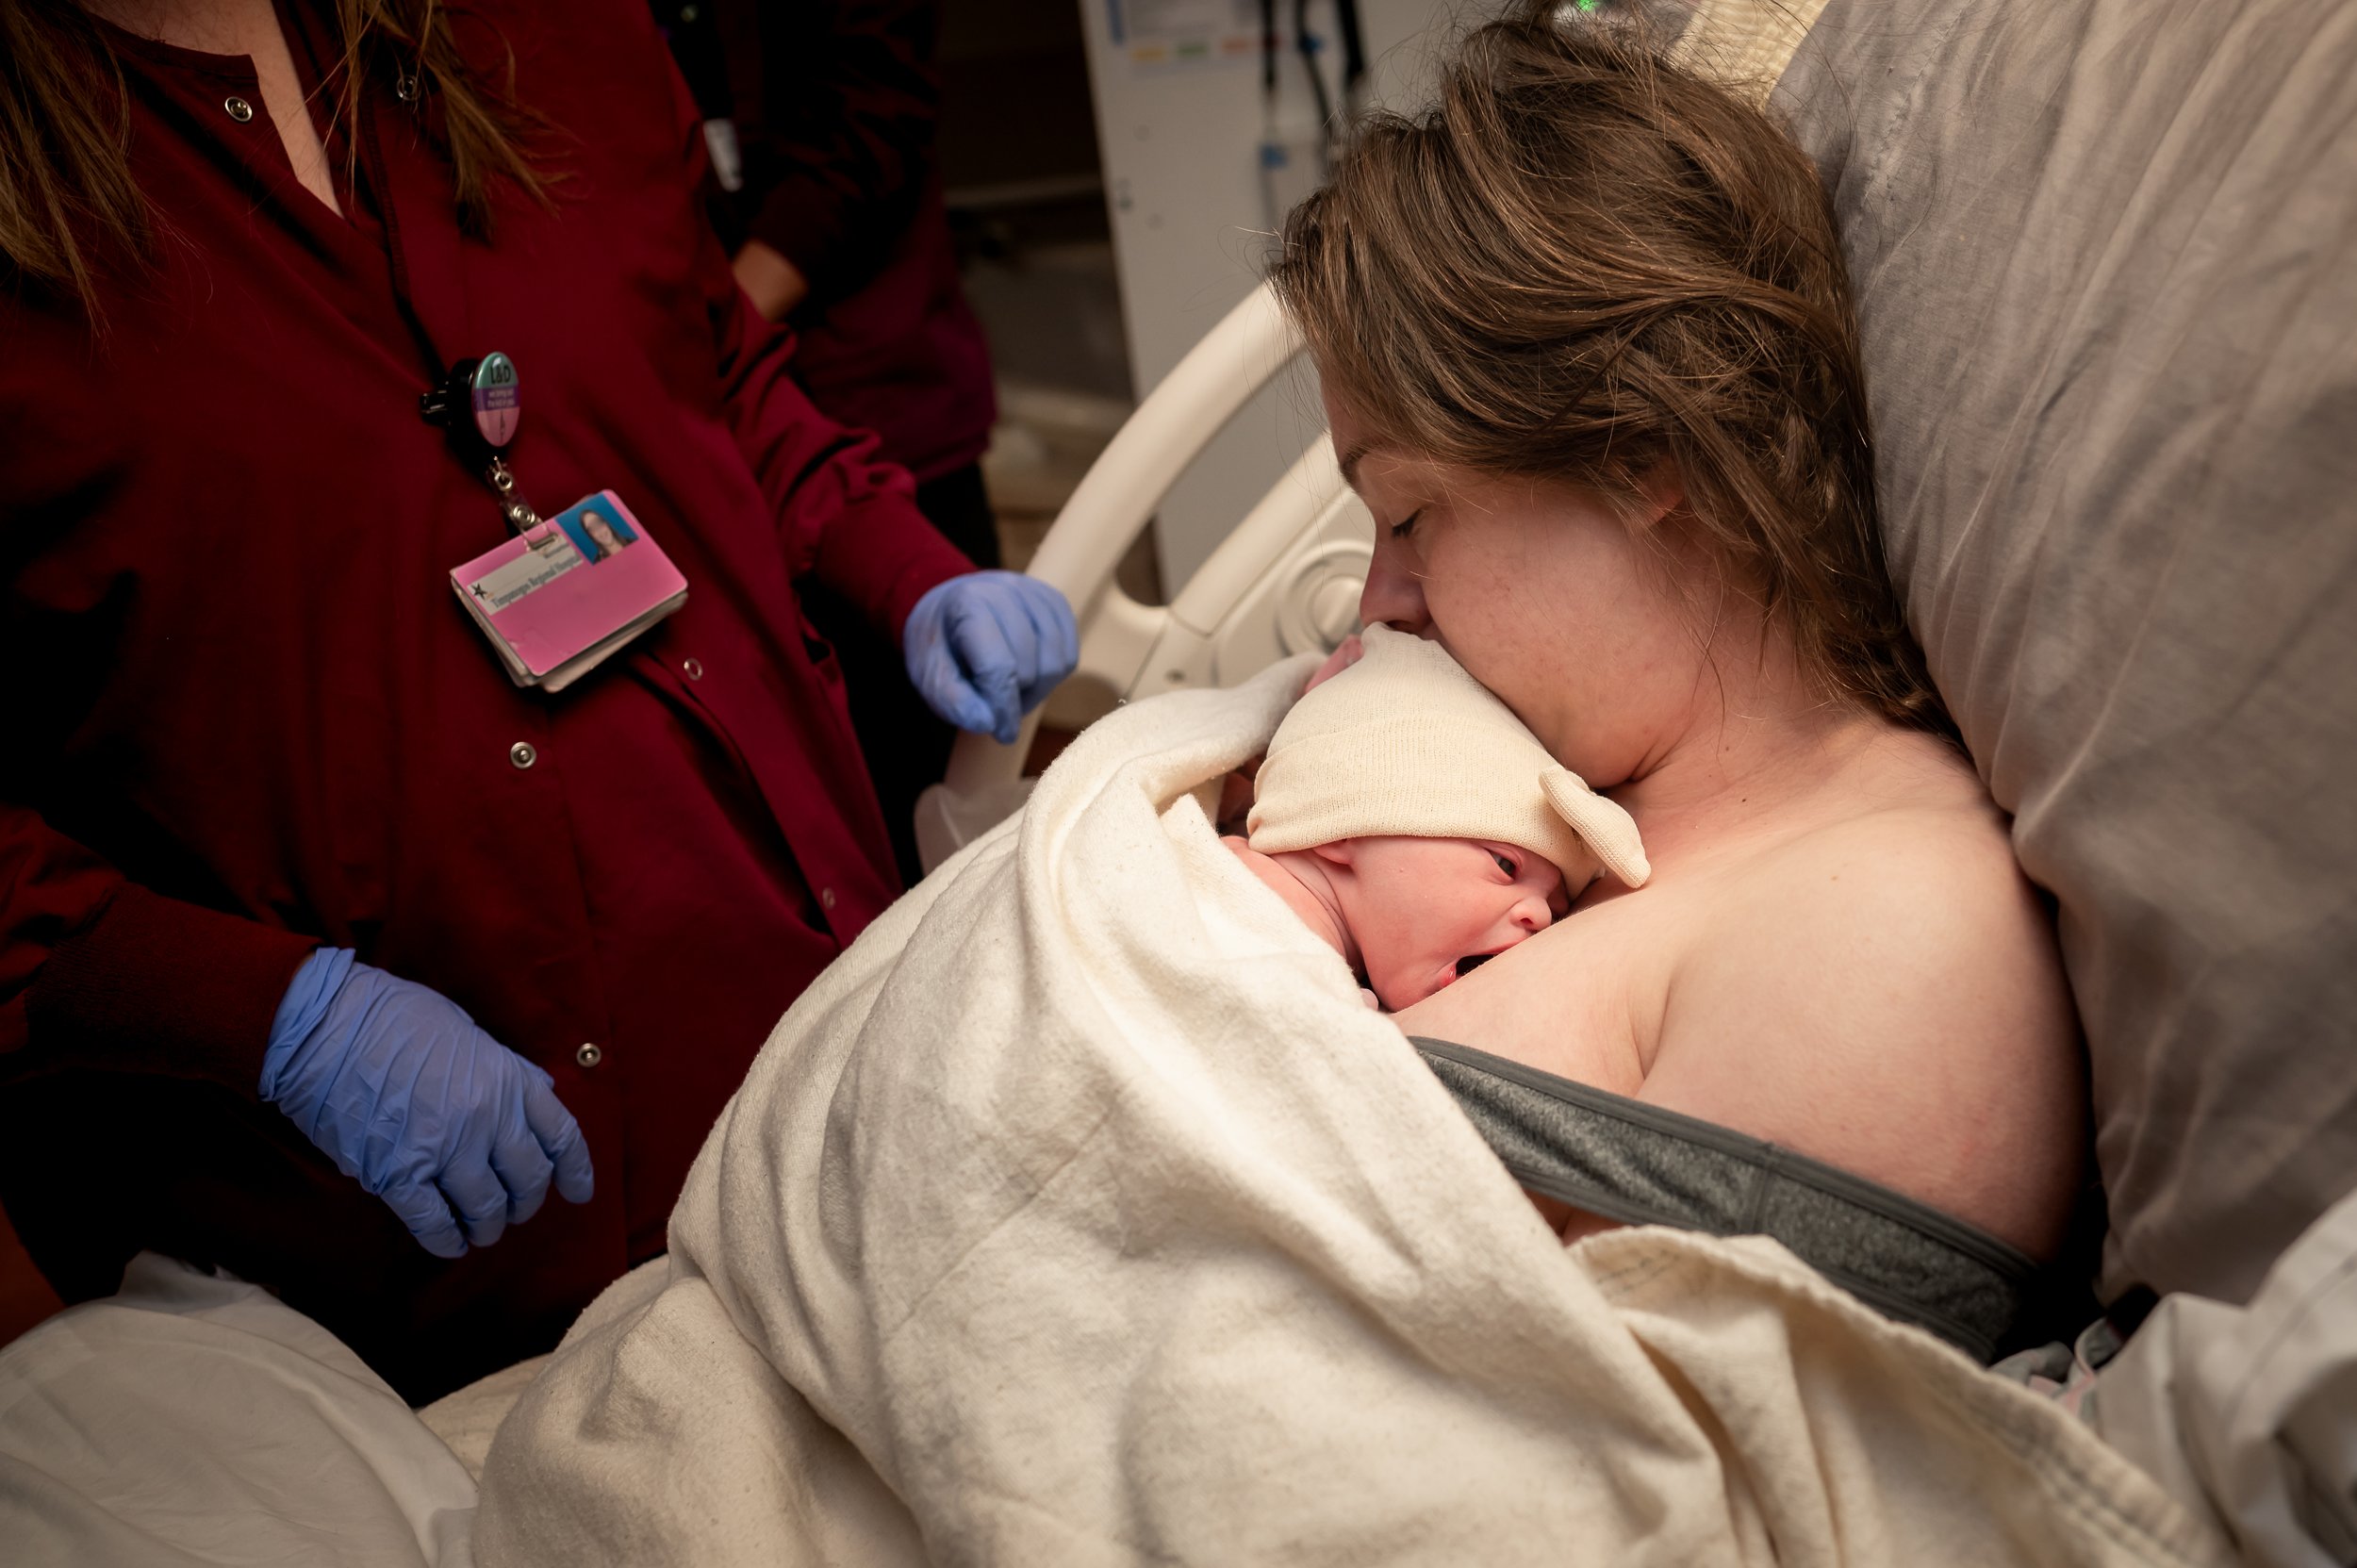 Julie Francom Birth Photography Timpanogos Hospital VBAC baby - 58 edit.jpeg